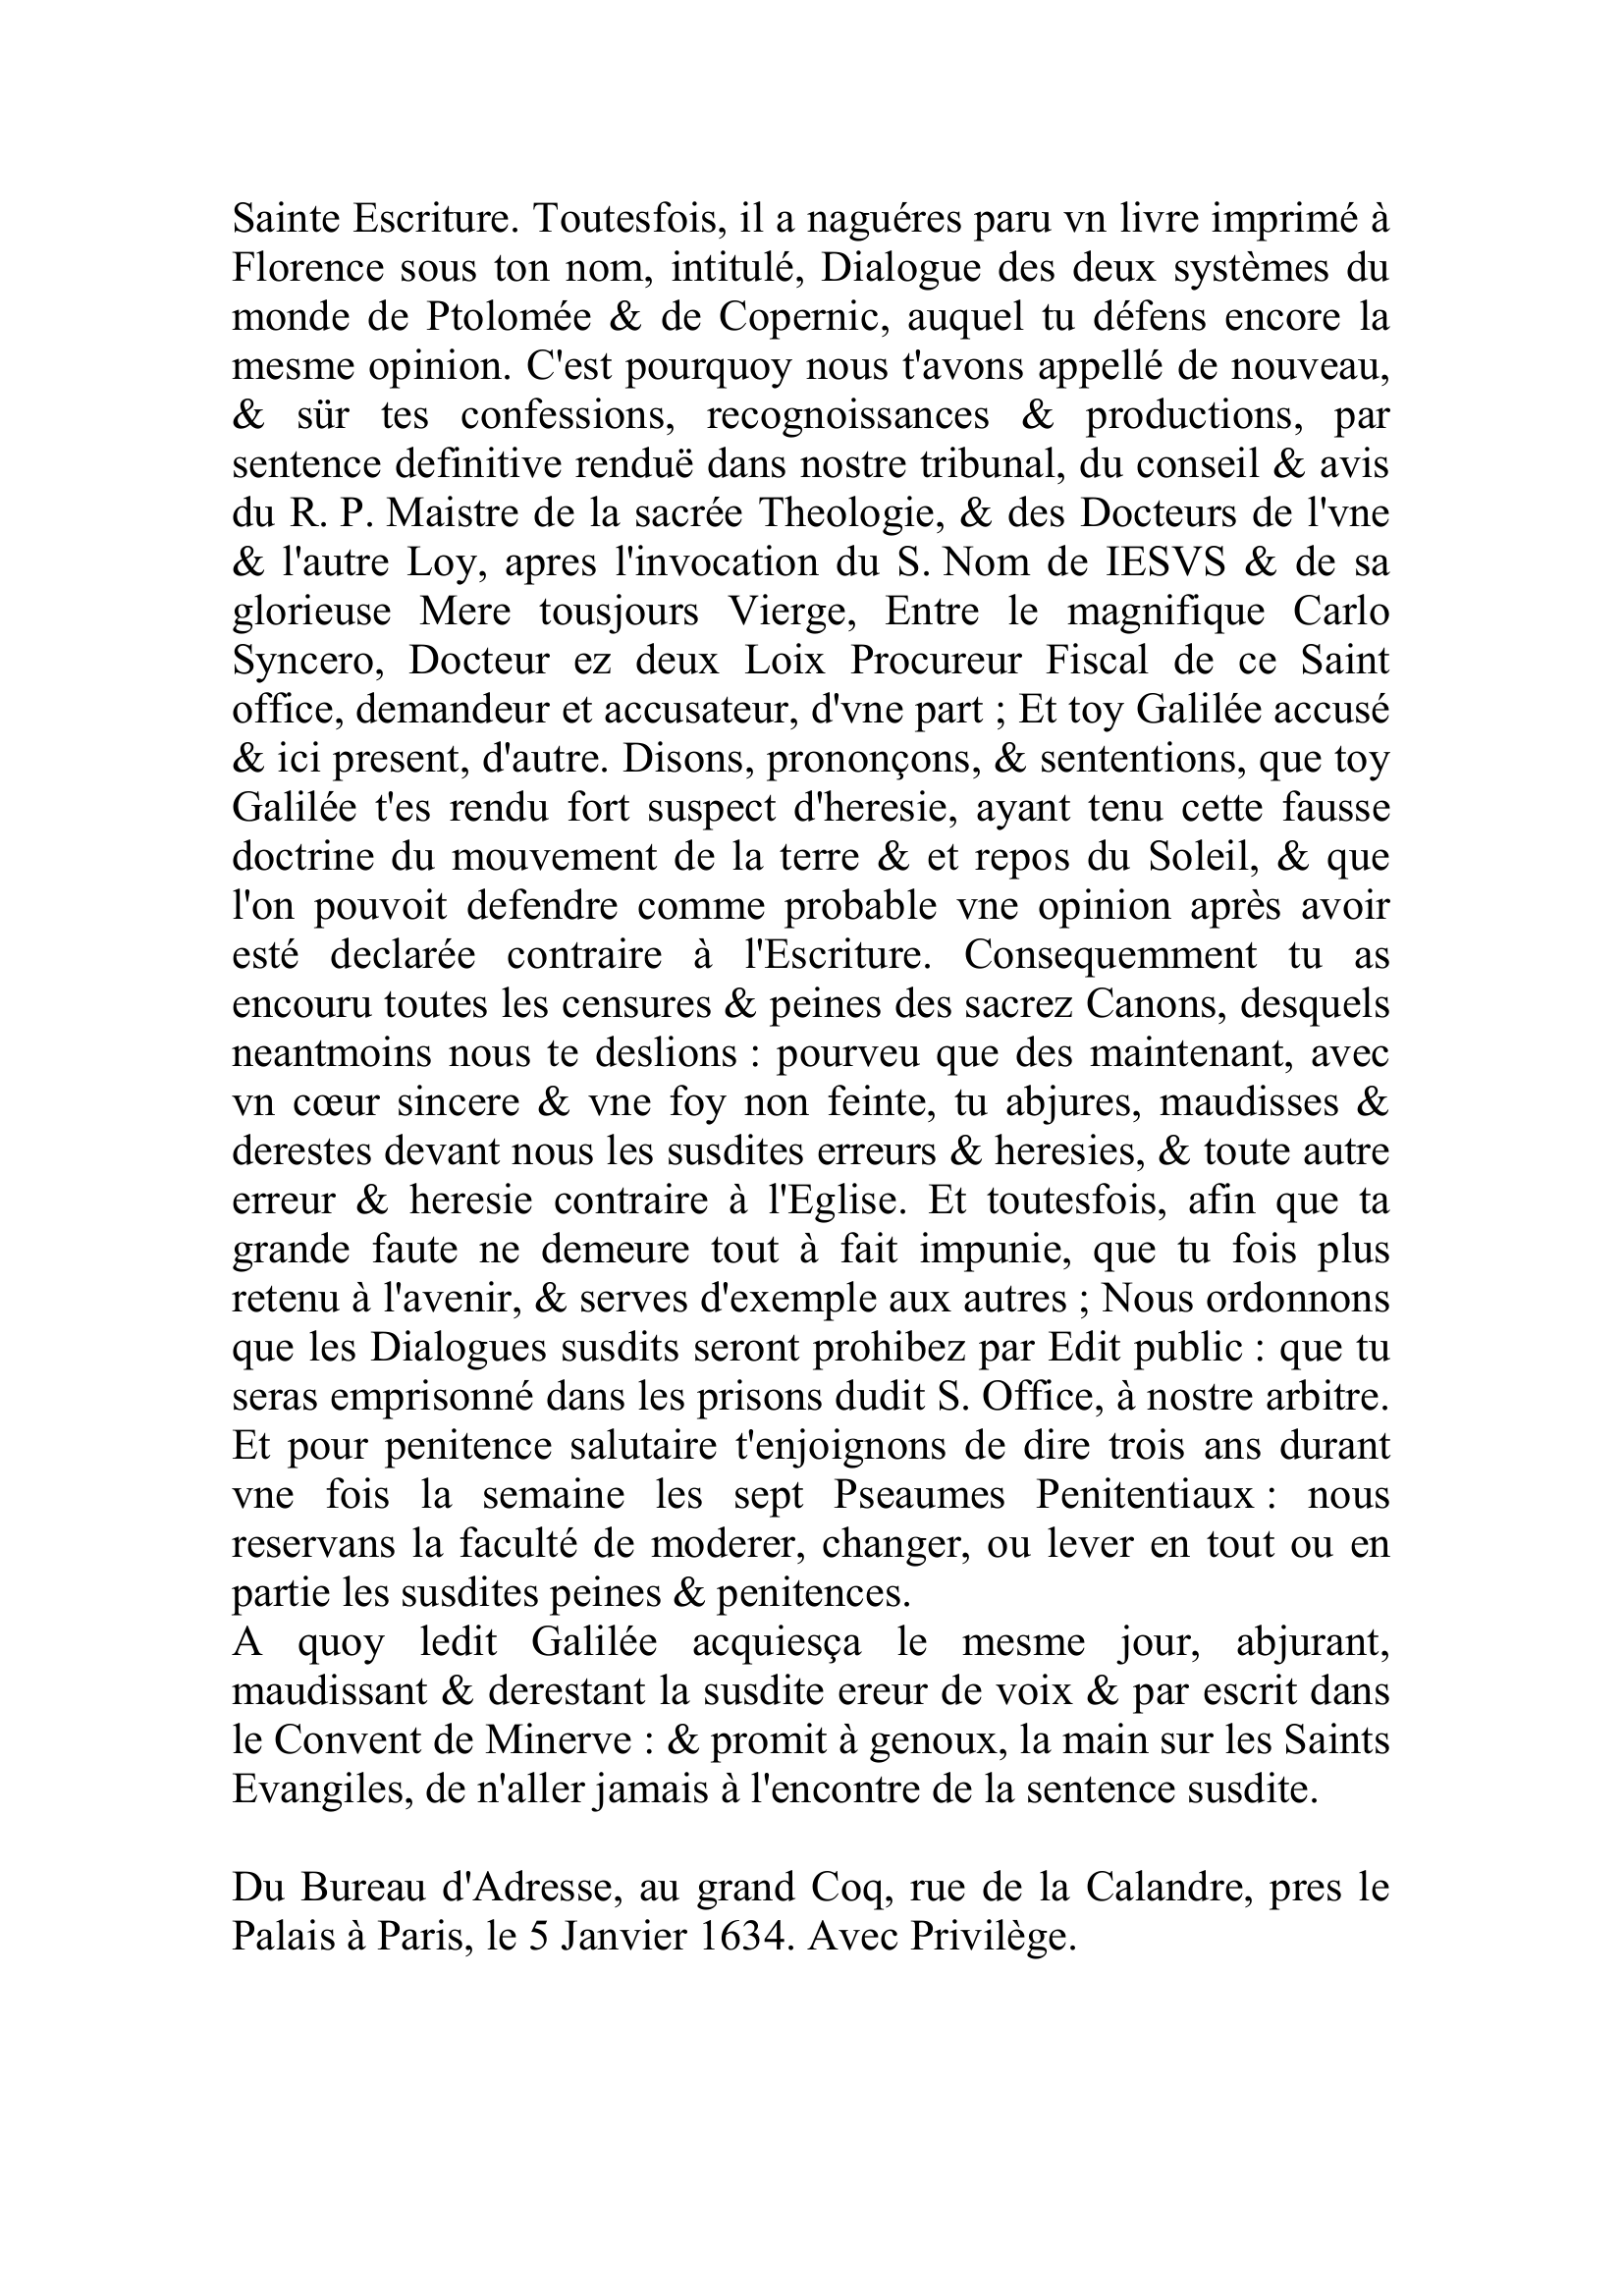 Prévisualisation du document La Gazette
Relation des nouvelles du Monde - Décembre 1633
Novs Gaspar, du titre de Sainte Croix en Jerusalem, Borgia.